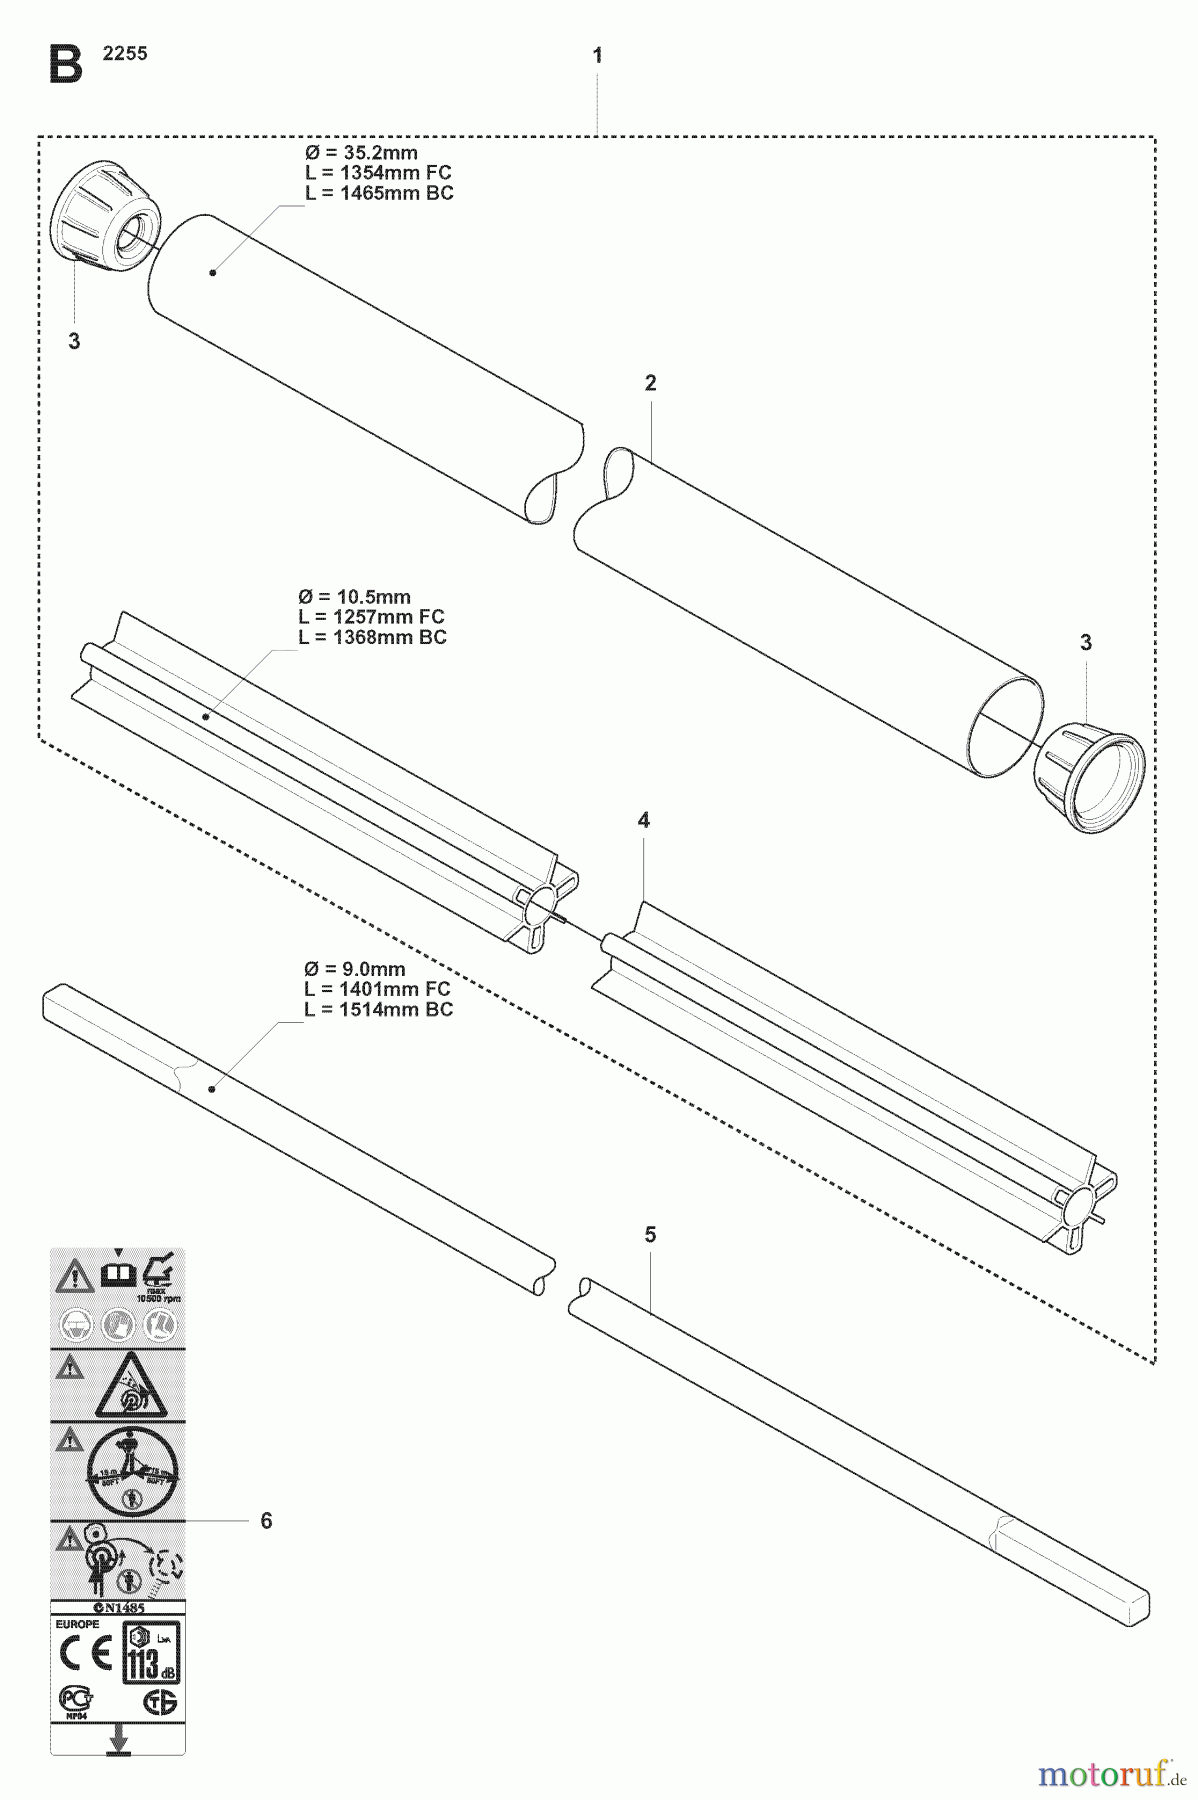  Jonsered Motorsensen, Trimmer FC2255 - Jonsered String/Brush Trimmer (2007-08) SHAFT